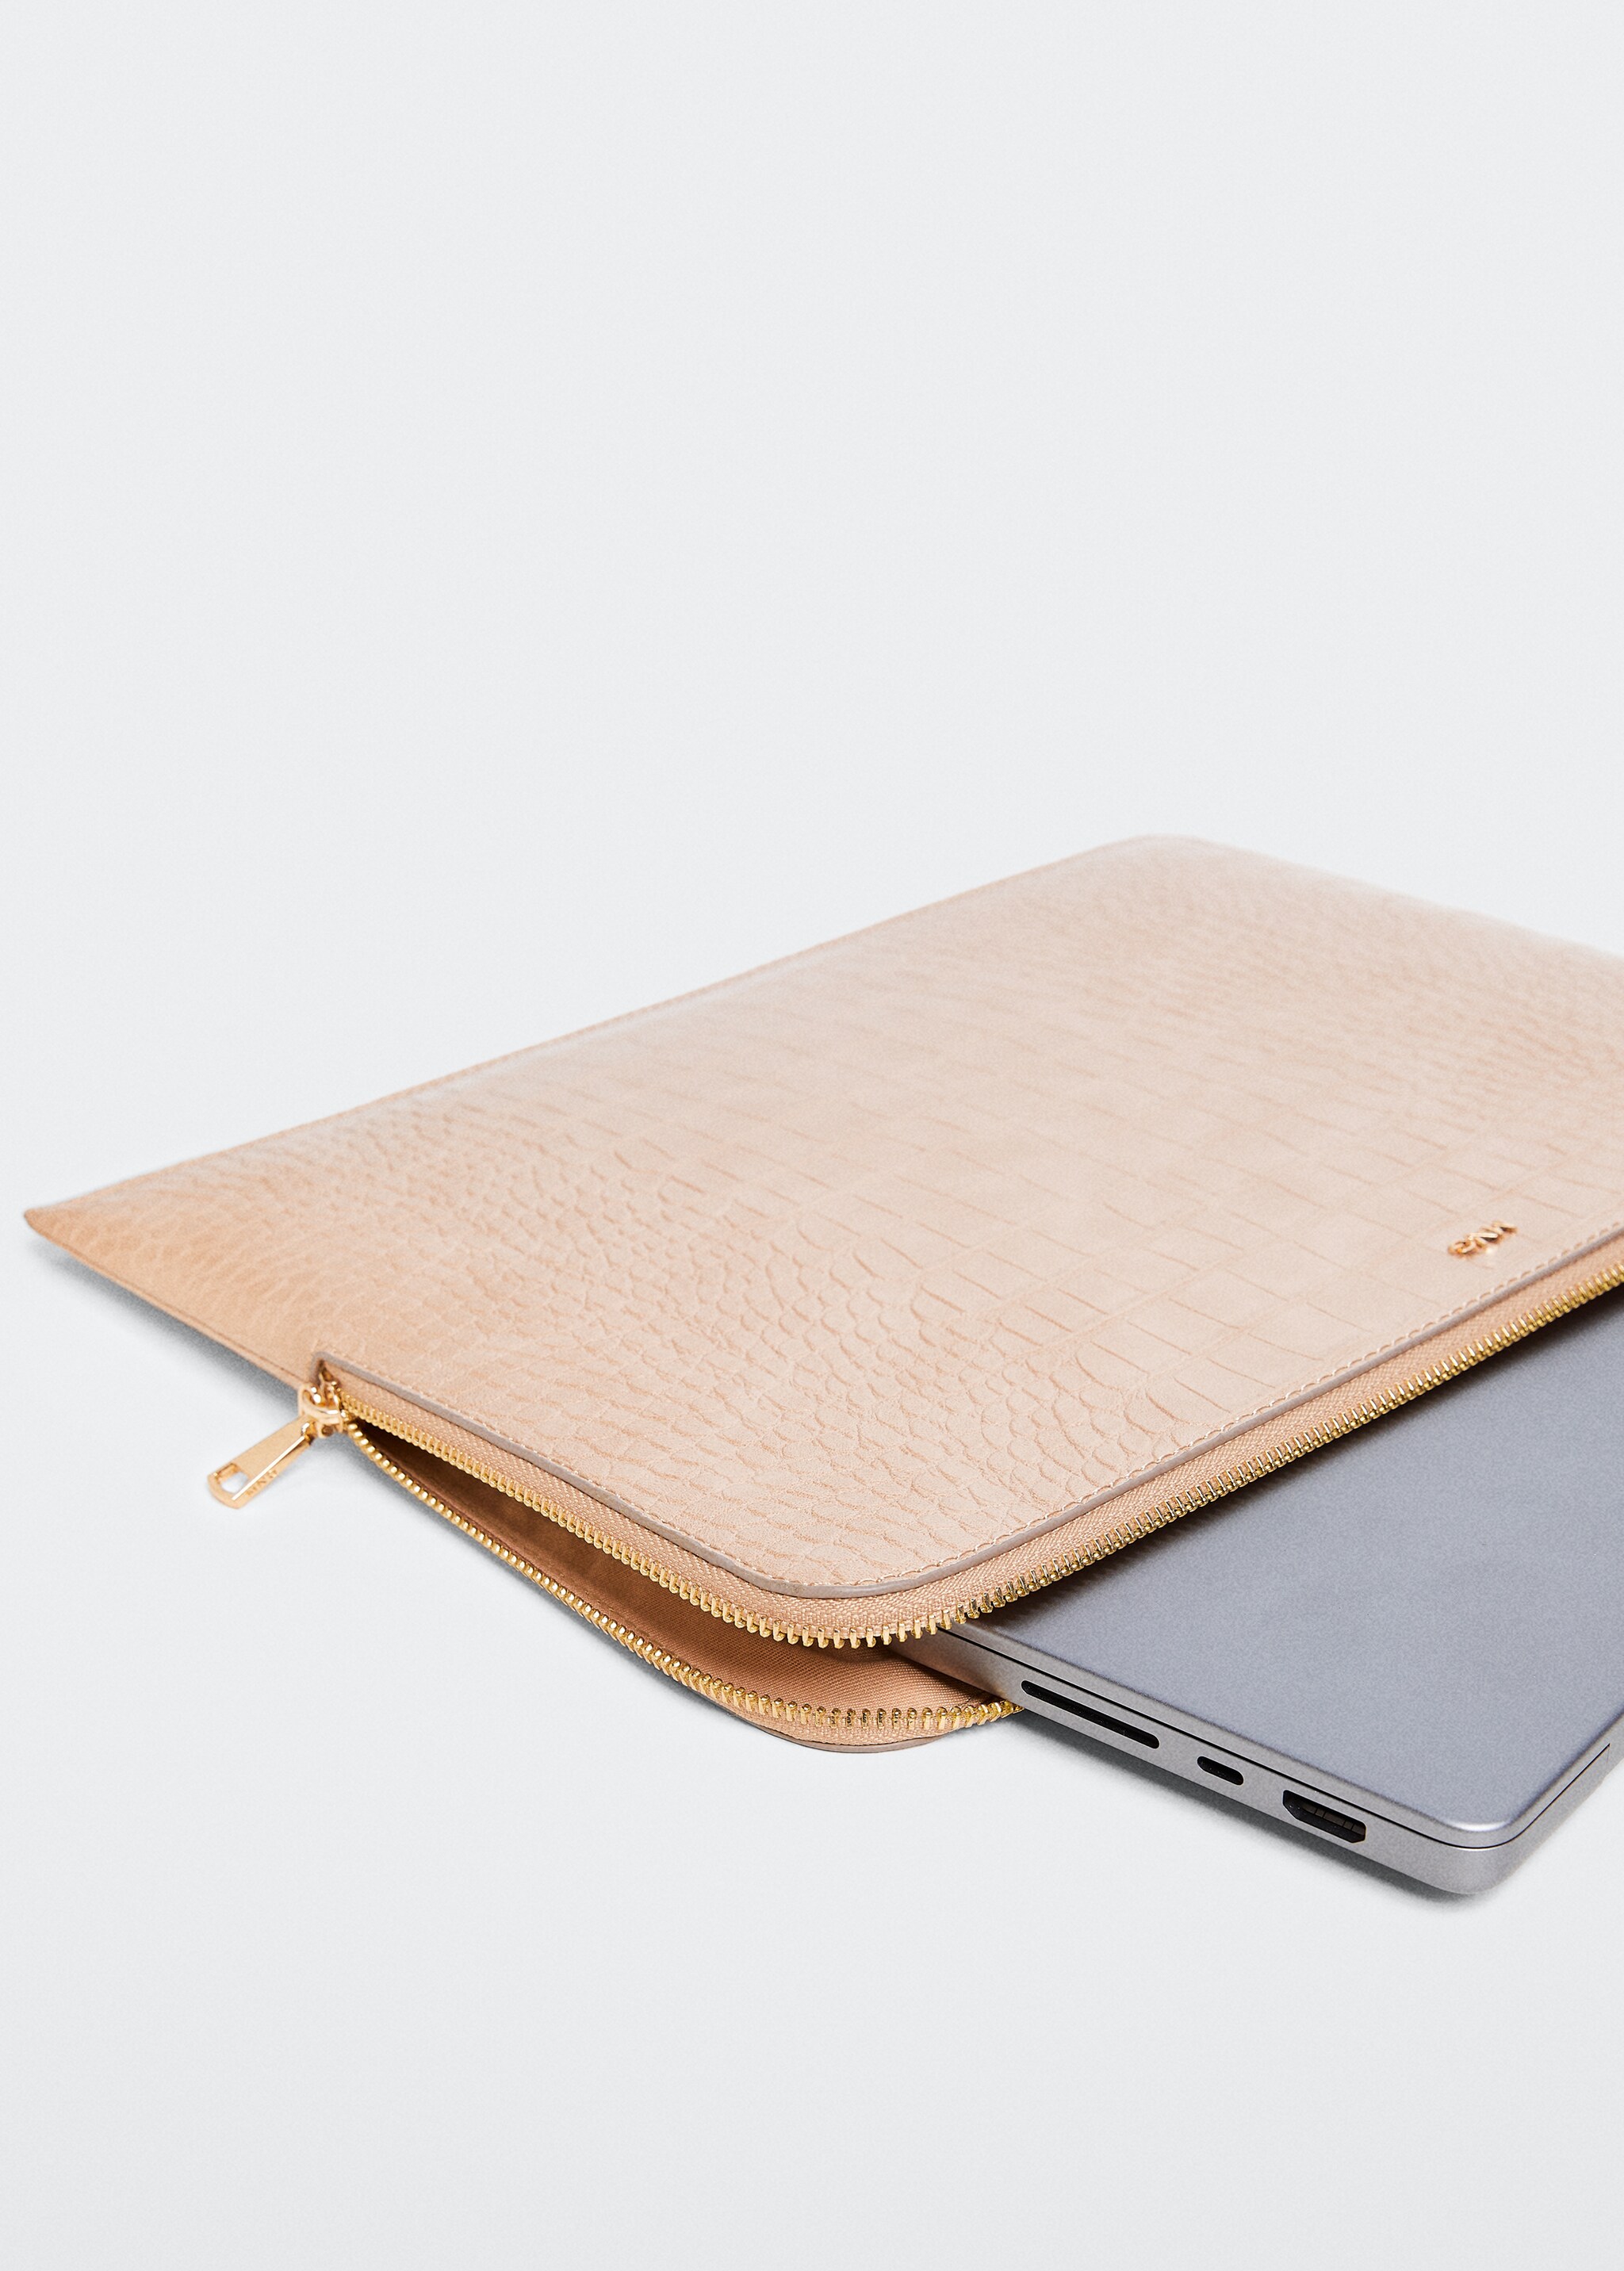 Coco laptop case - Medium plane